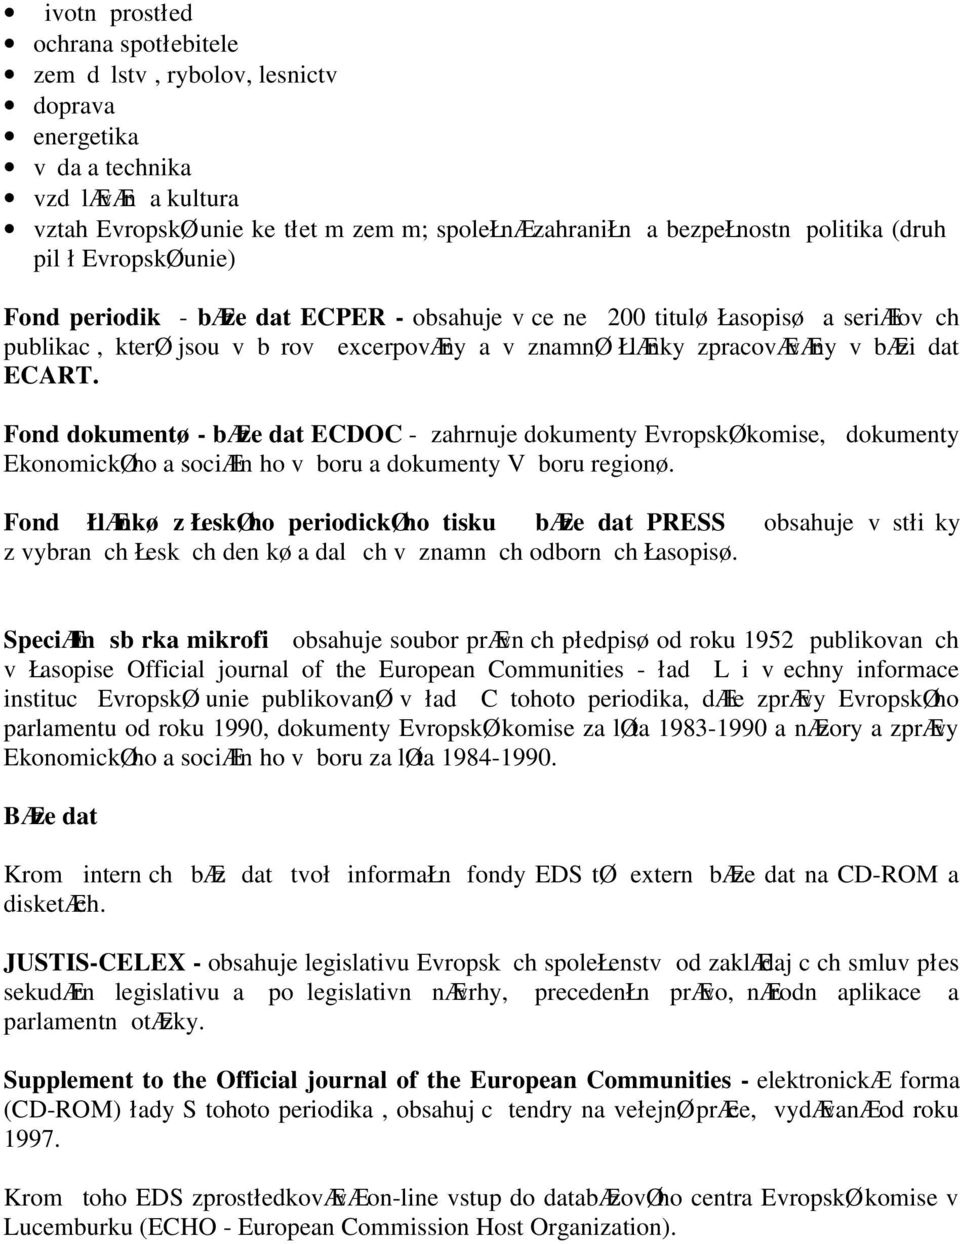 Fond dokumentø - bæze dat ECDOC - zahrnuje dokumenty EvropskØ komise, dokumenty EkonomickØho a sociæln ho v boru a dokumenty V boru regionø.